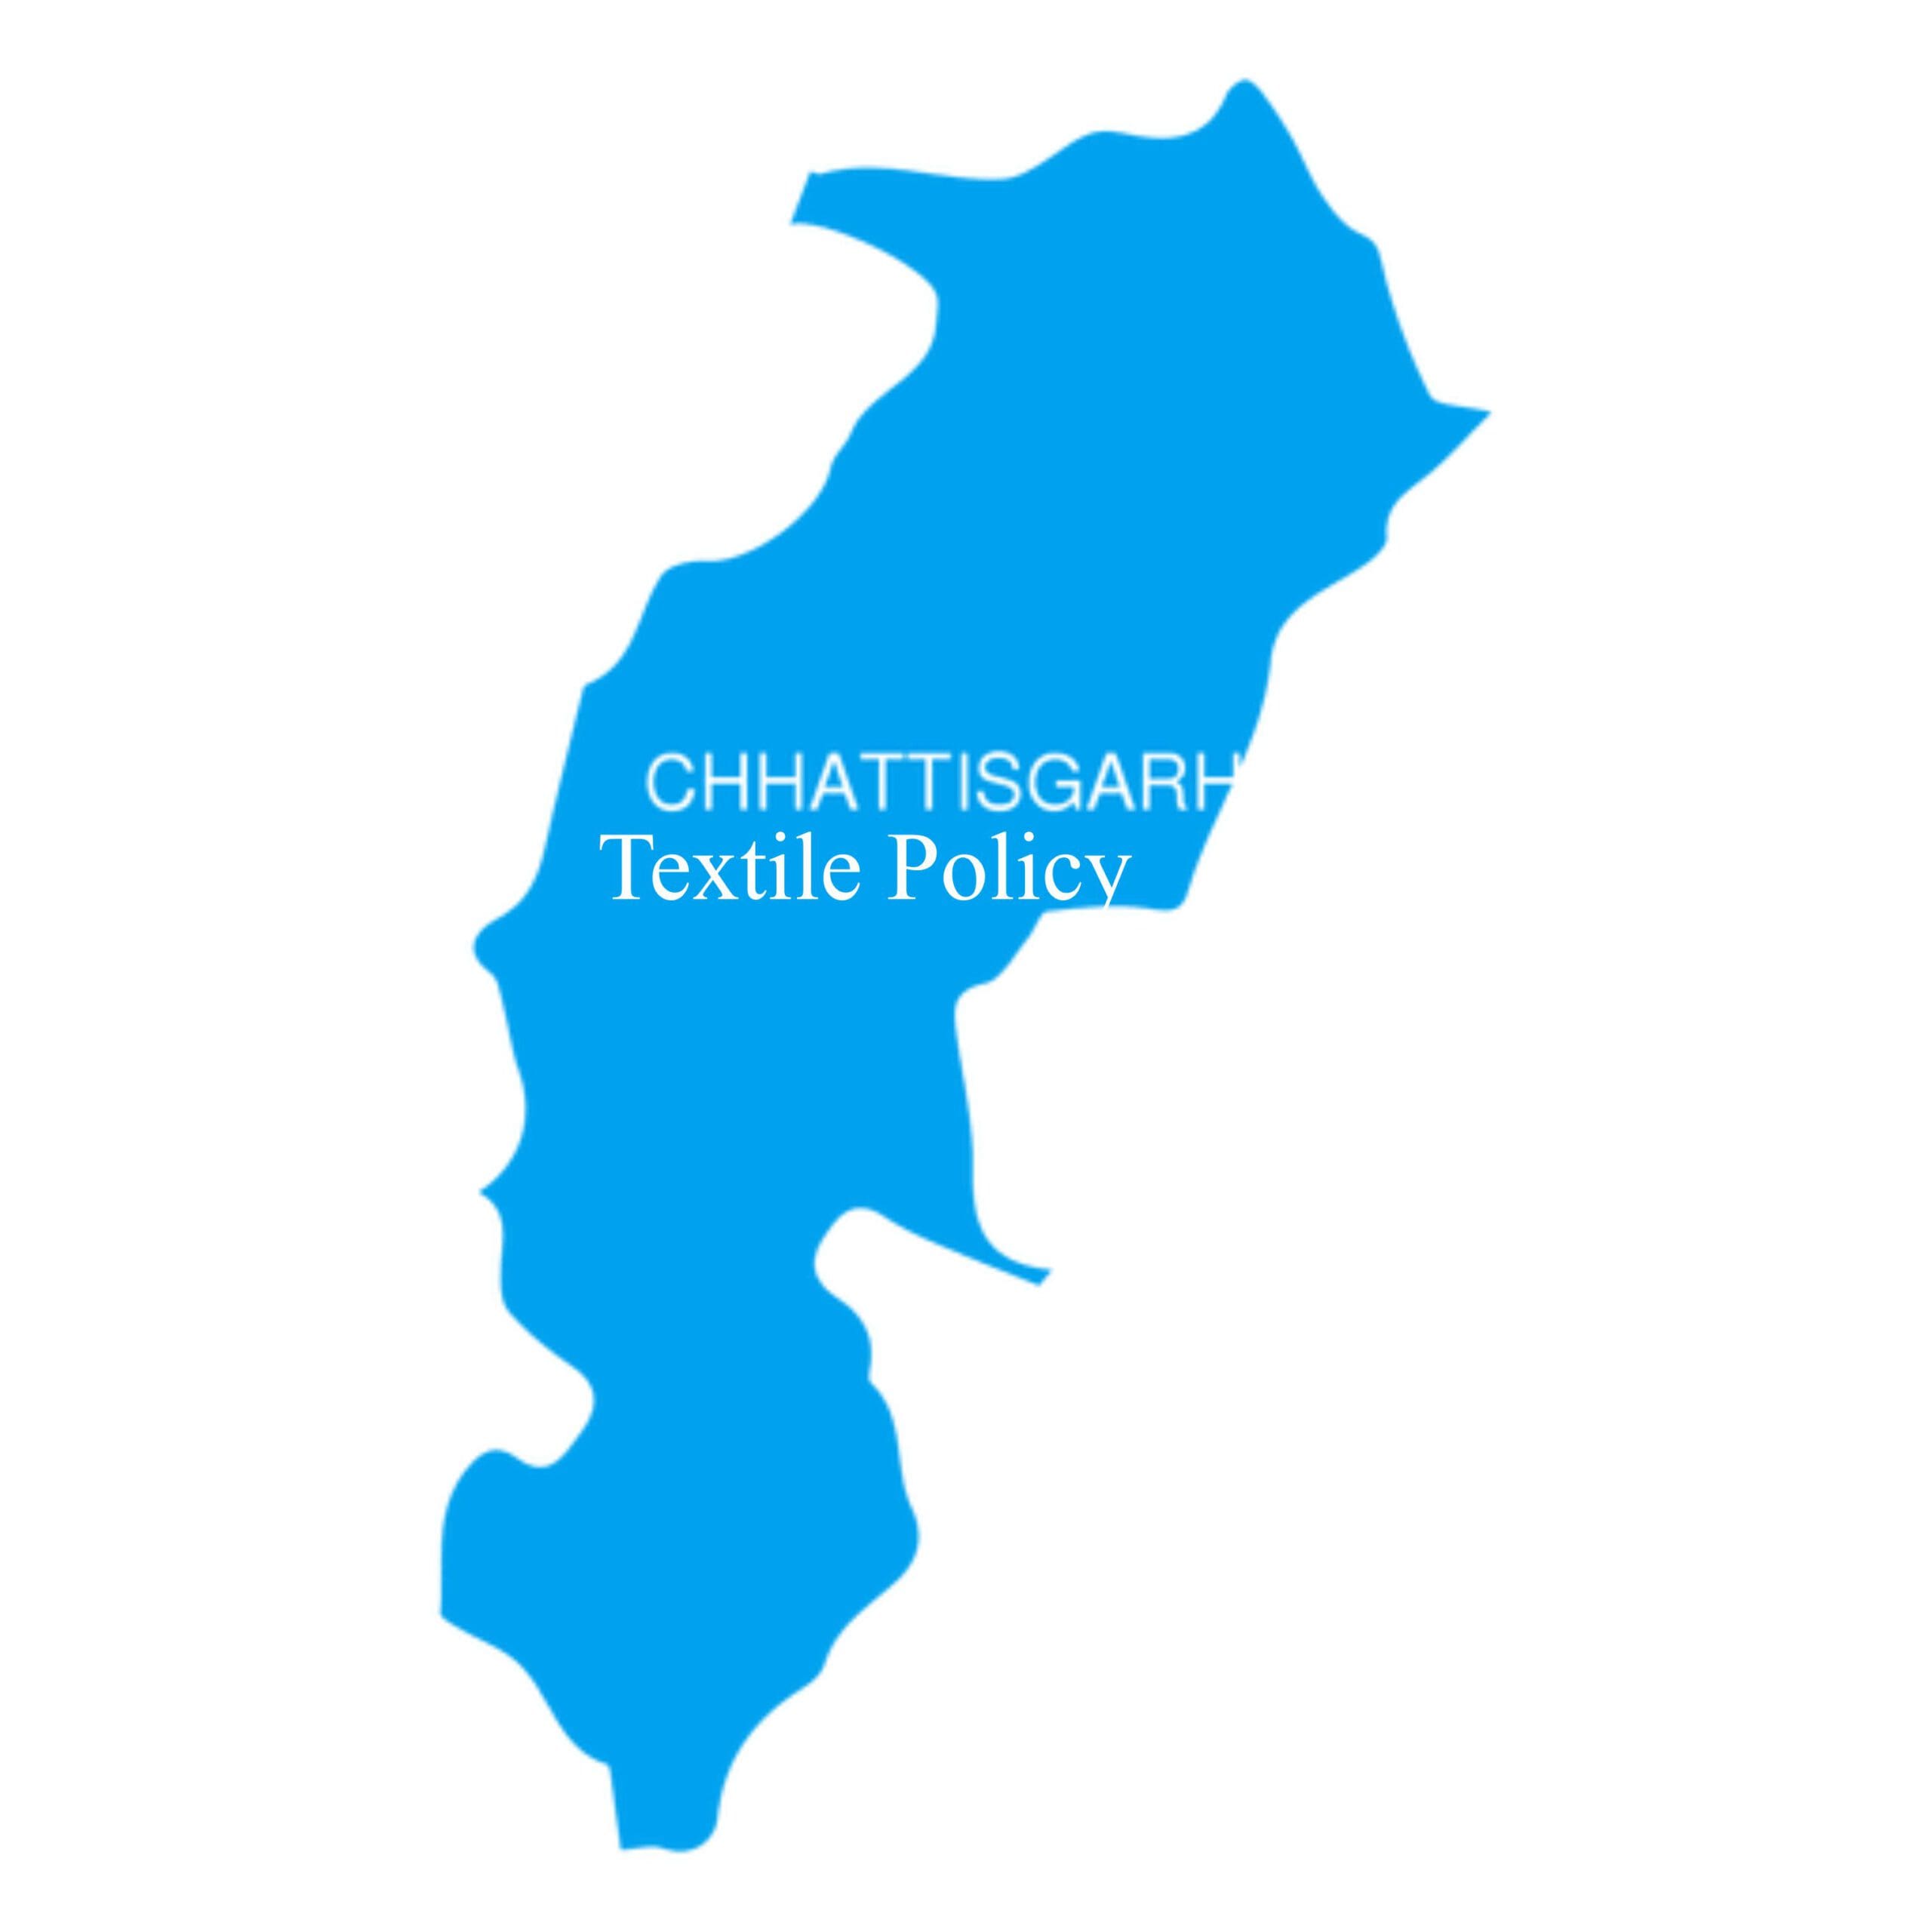 Chhattisgarh Textile Policy